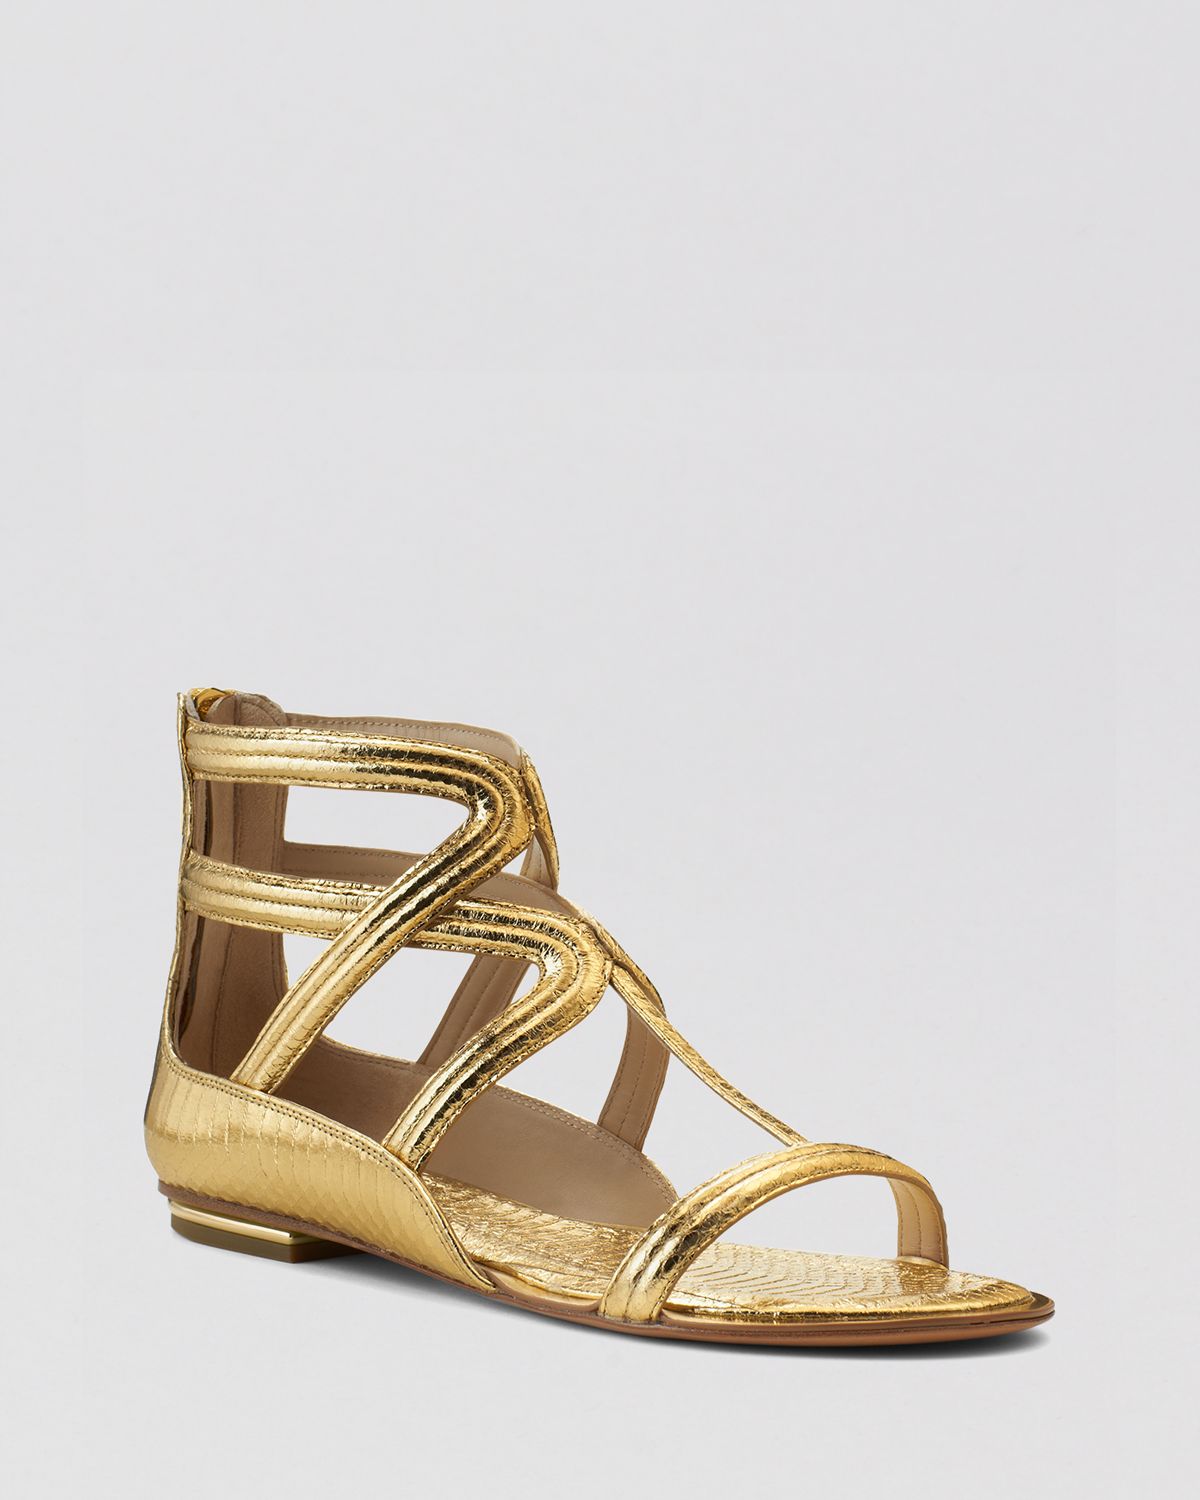 Gold Gladiator Sandals: Michael Kors Gold Gladiator Sandals